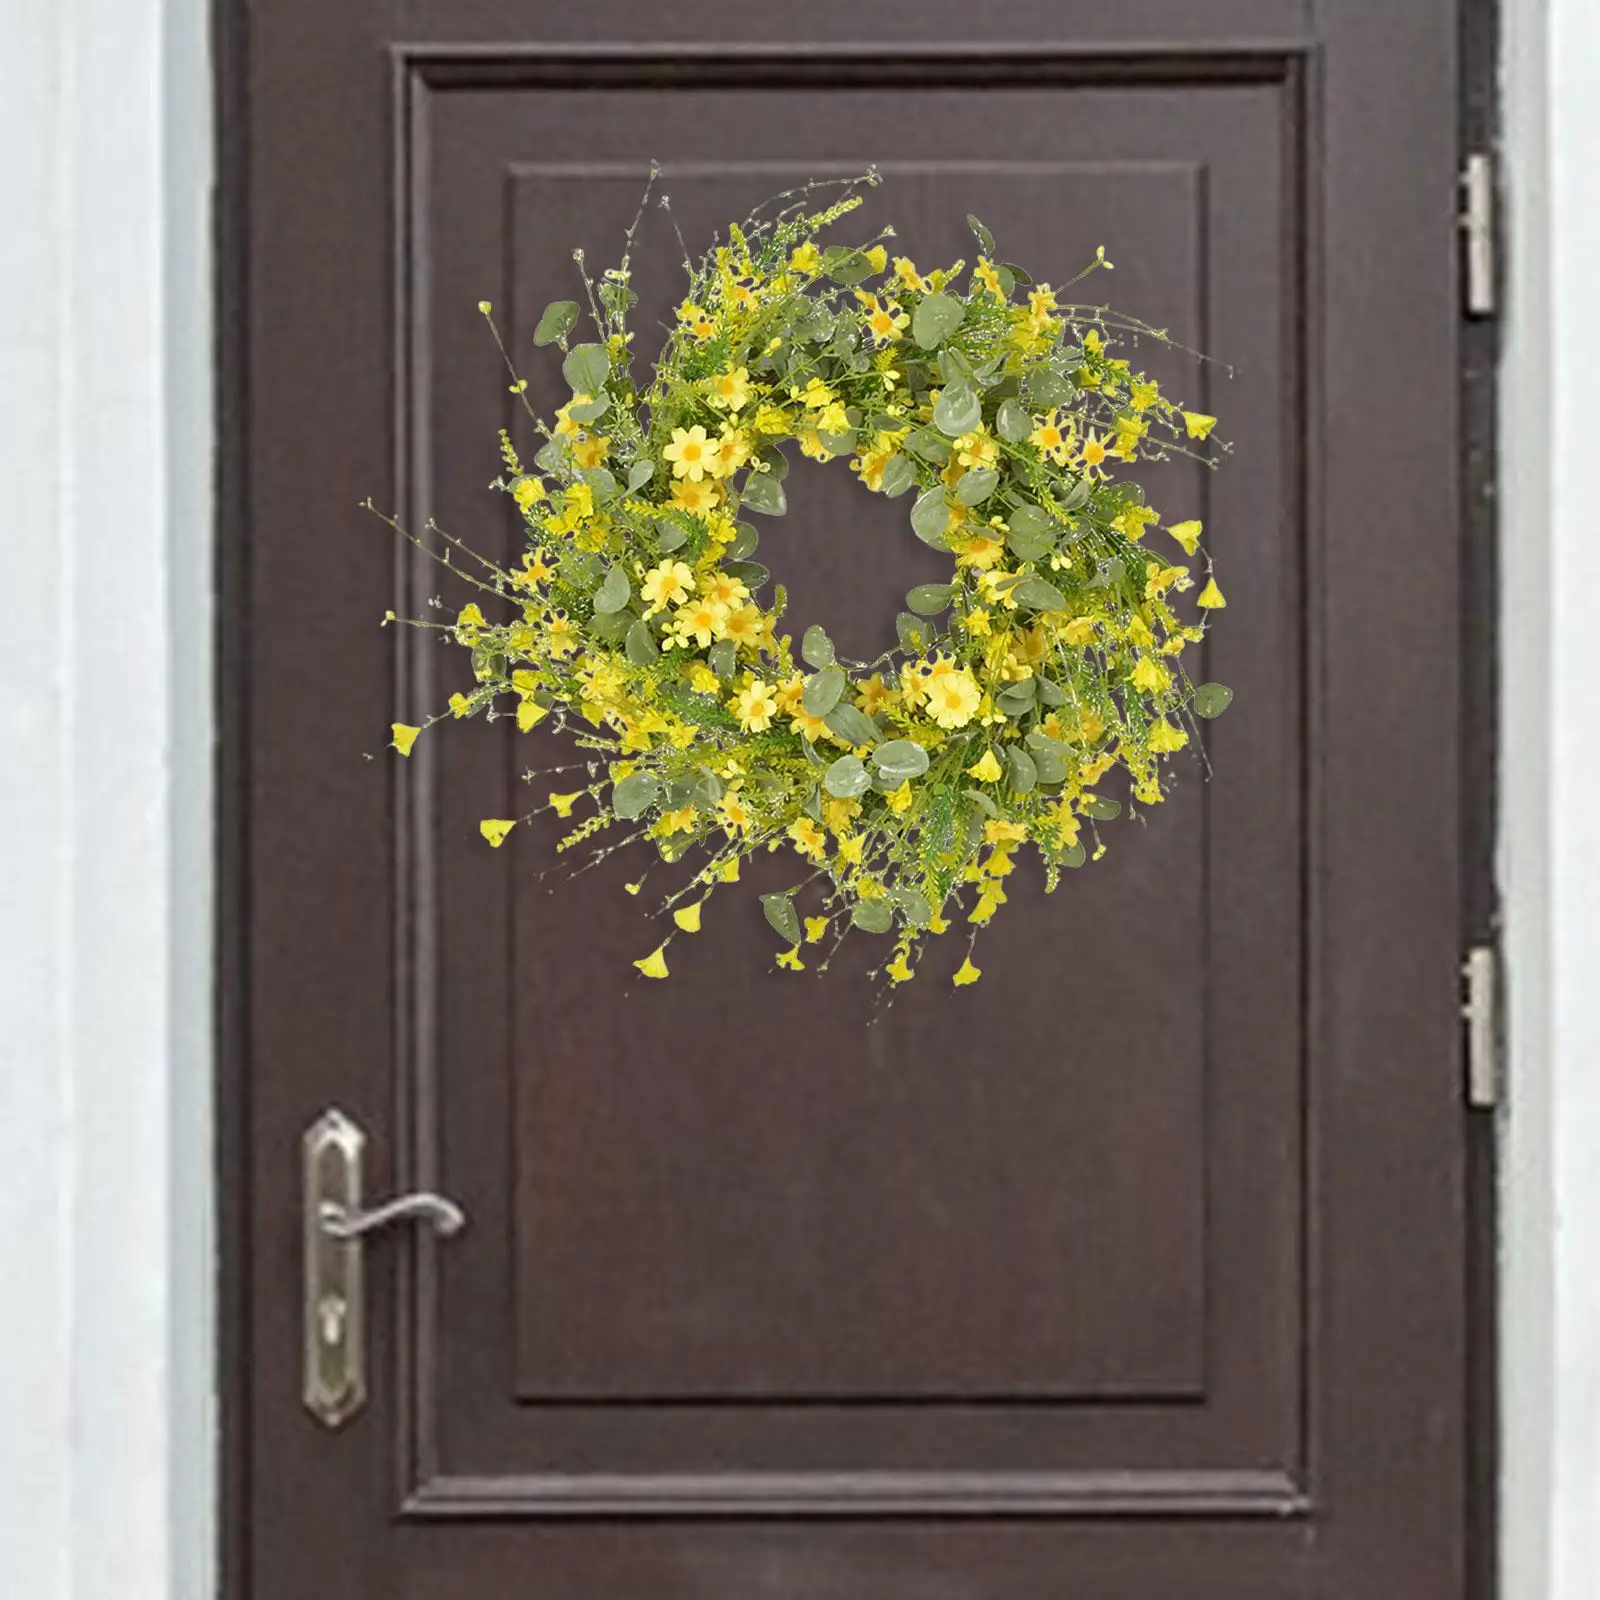 60cm Daisy Eucalyptus Wreath Door Garland Creative Flower Wreath for Home Decoration Holidays Fireplace Farmhouse Easter